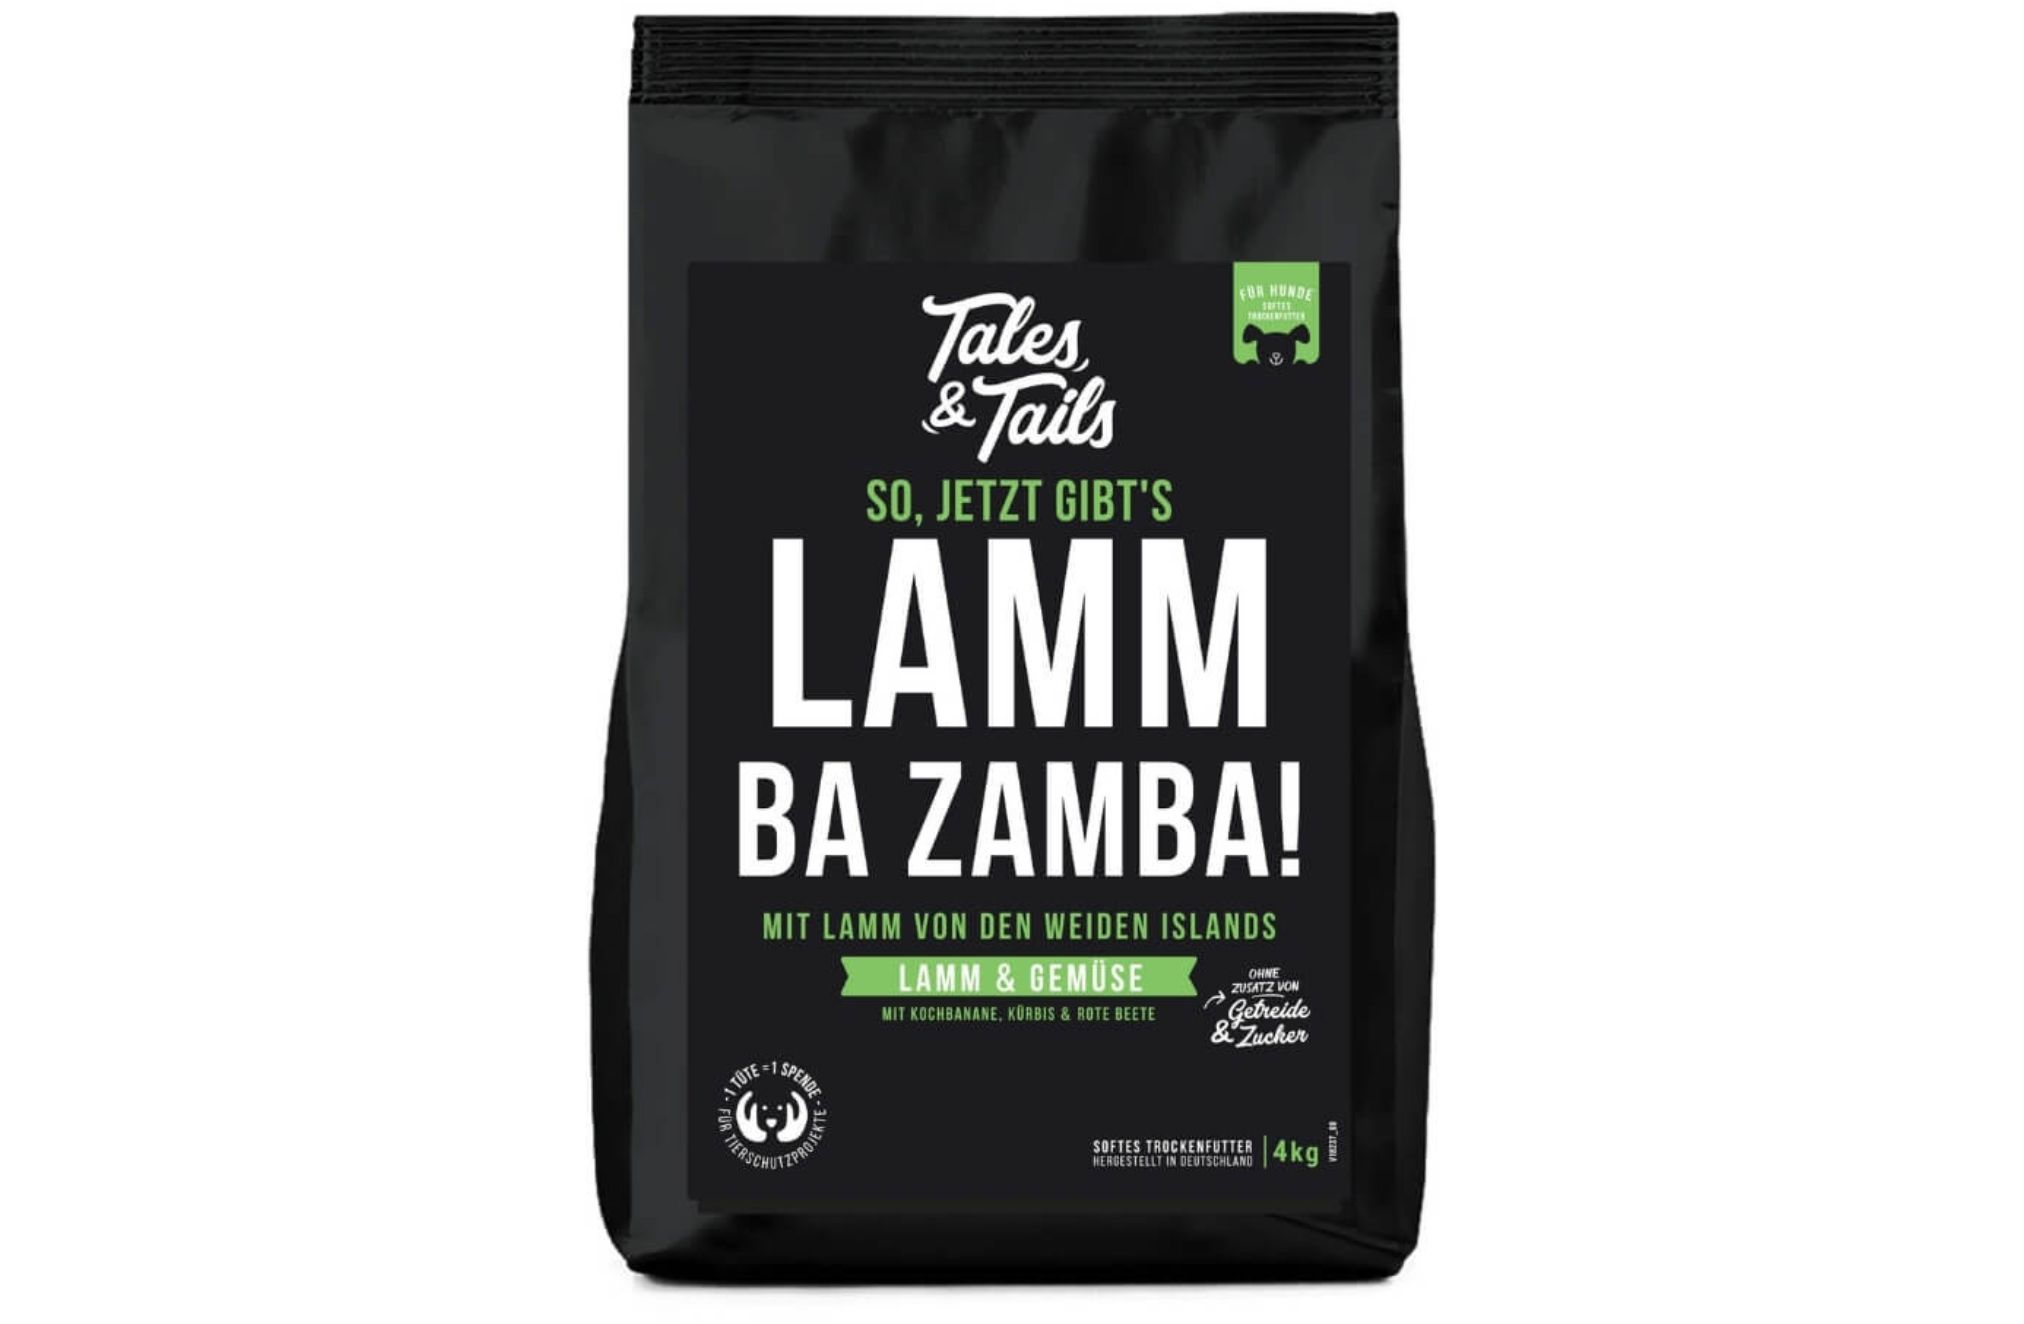 Tales&Tails Lammba Zamba 4kg